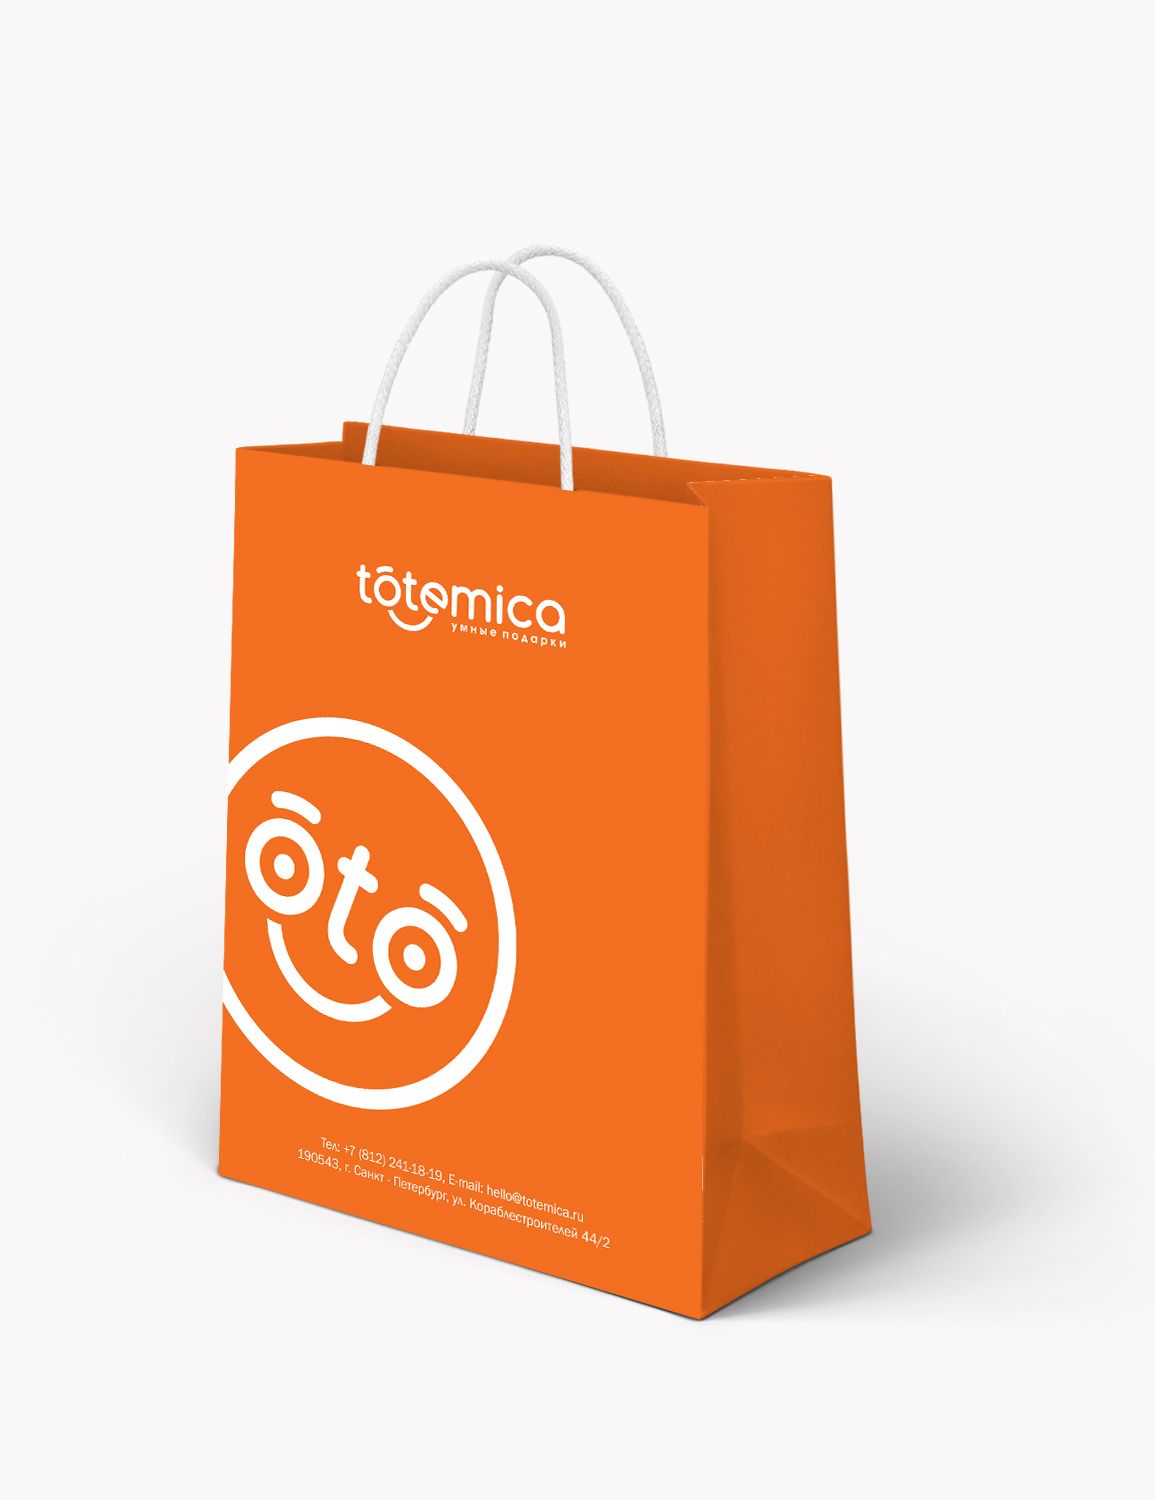 Лого и ФС для ИМ подарков Totemica - дизайнер superrituz